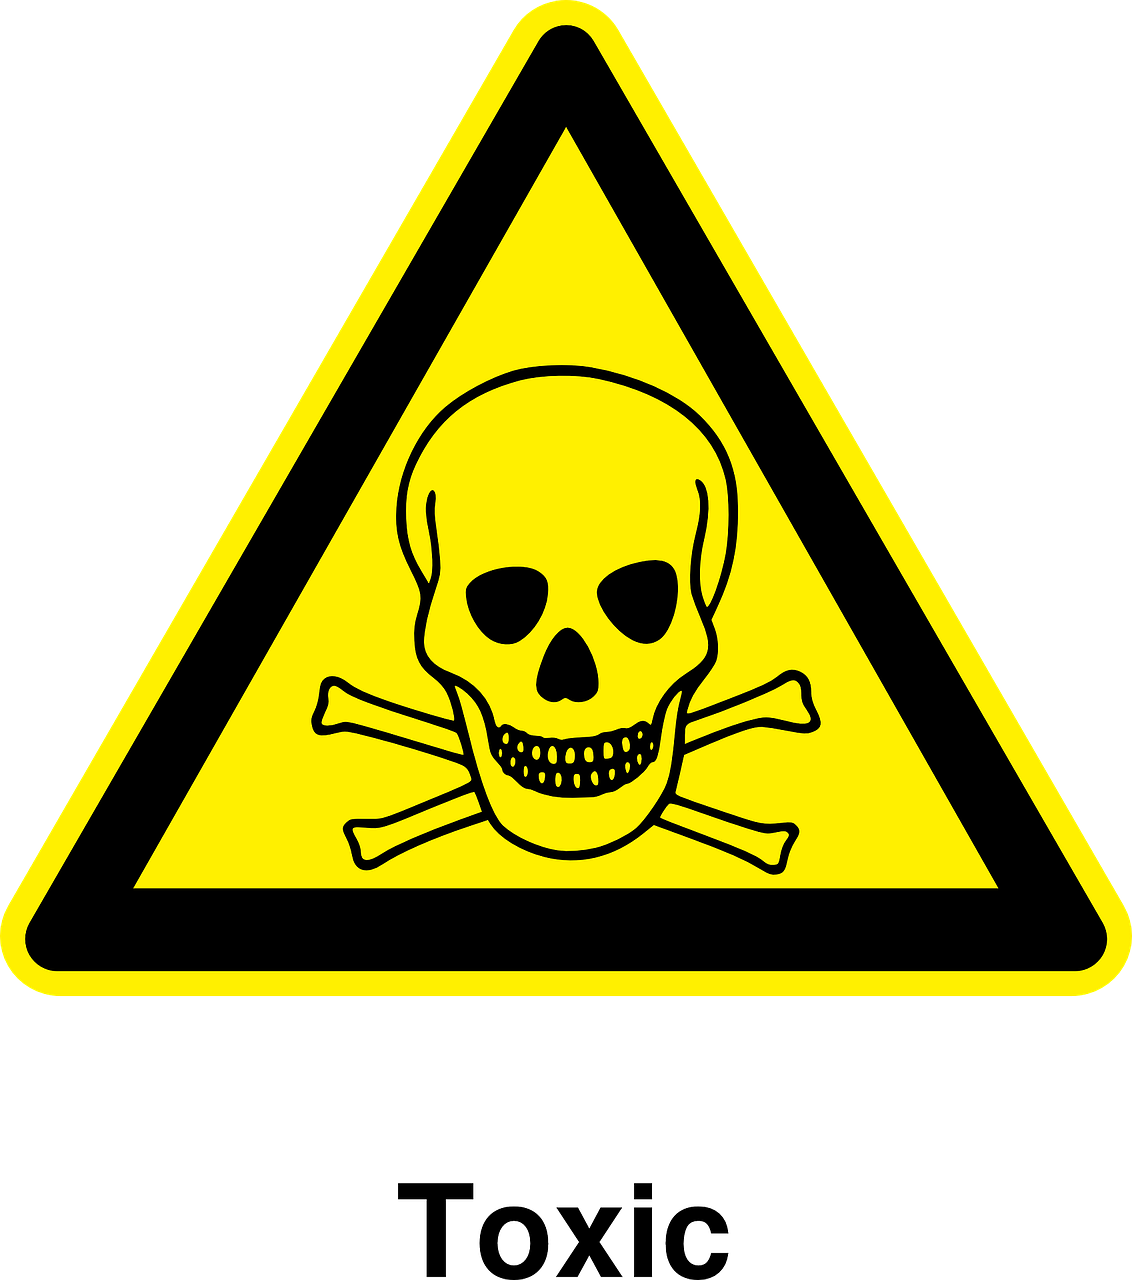 toxic materials warning free photo